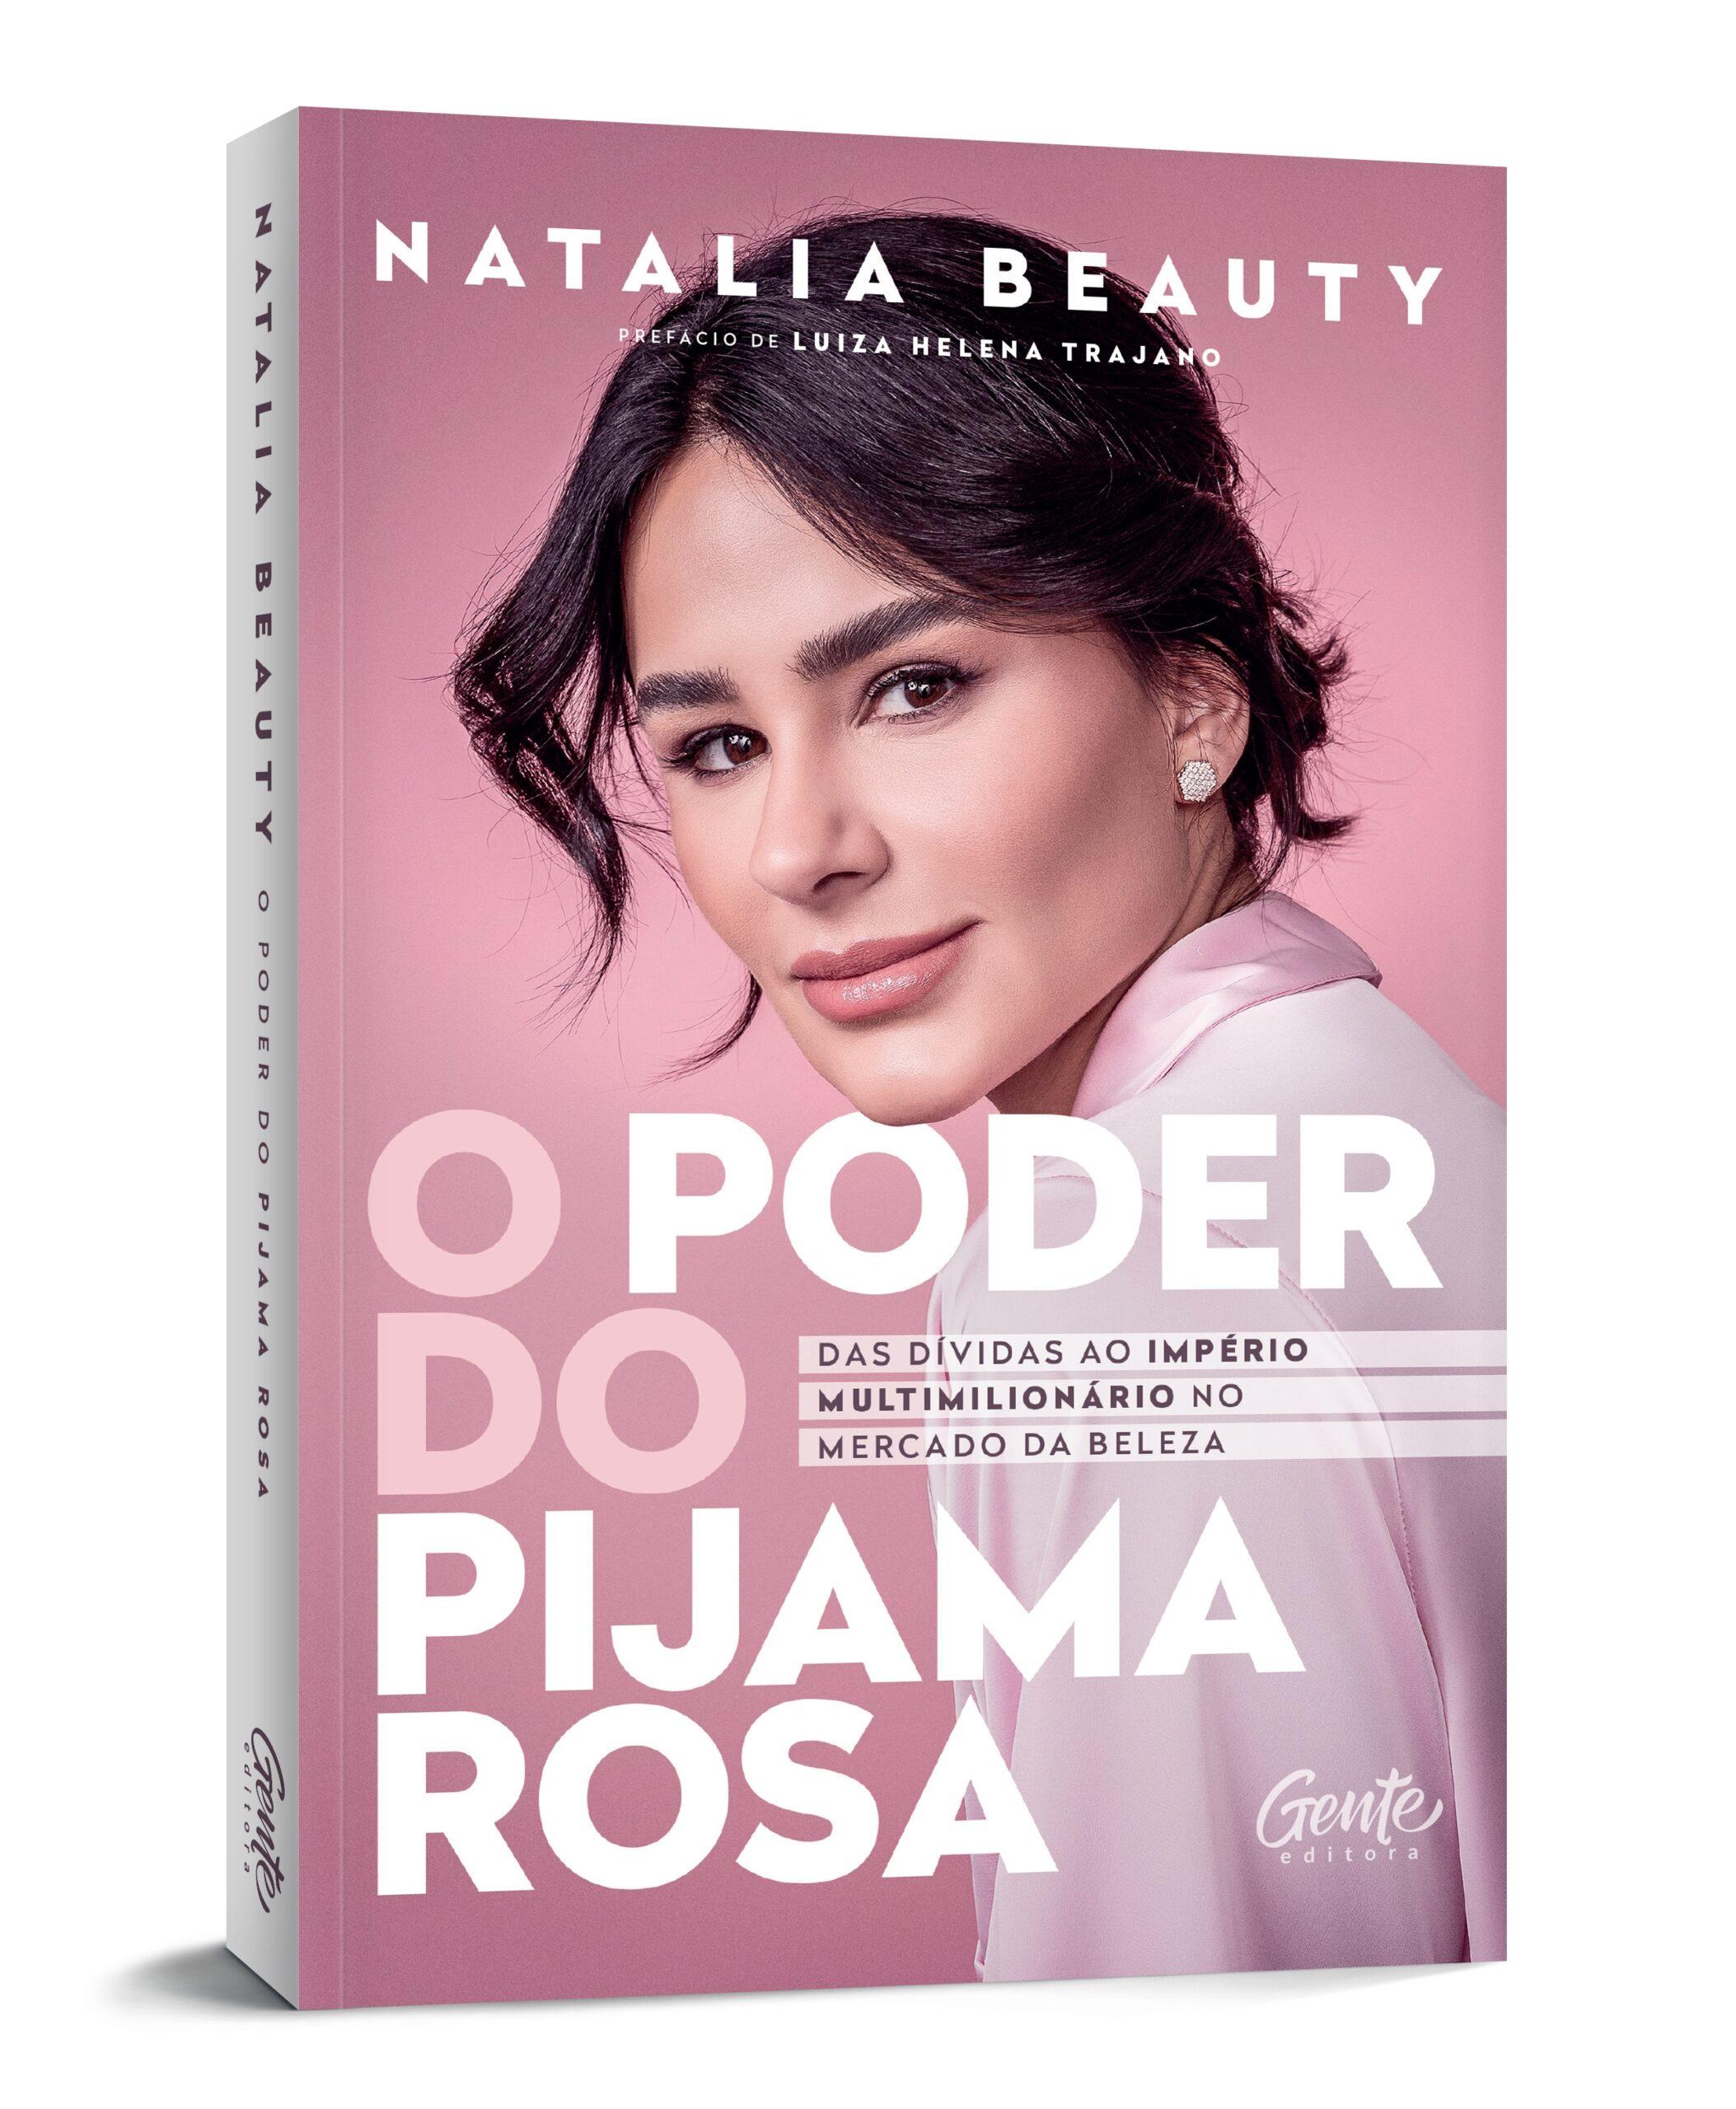 O Poder do Pijama Rosa: novo livro de Natalia Martins promete revolucionar perspectivas no empreendedorismo feminino